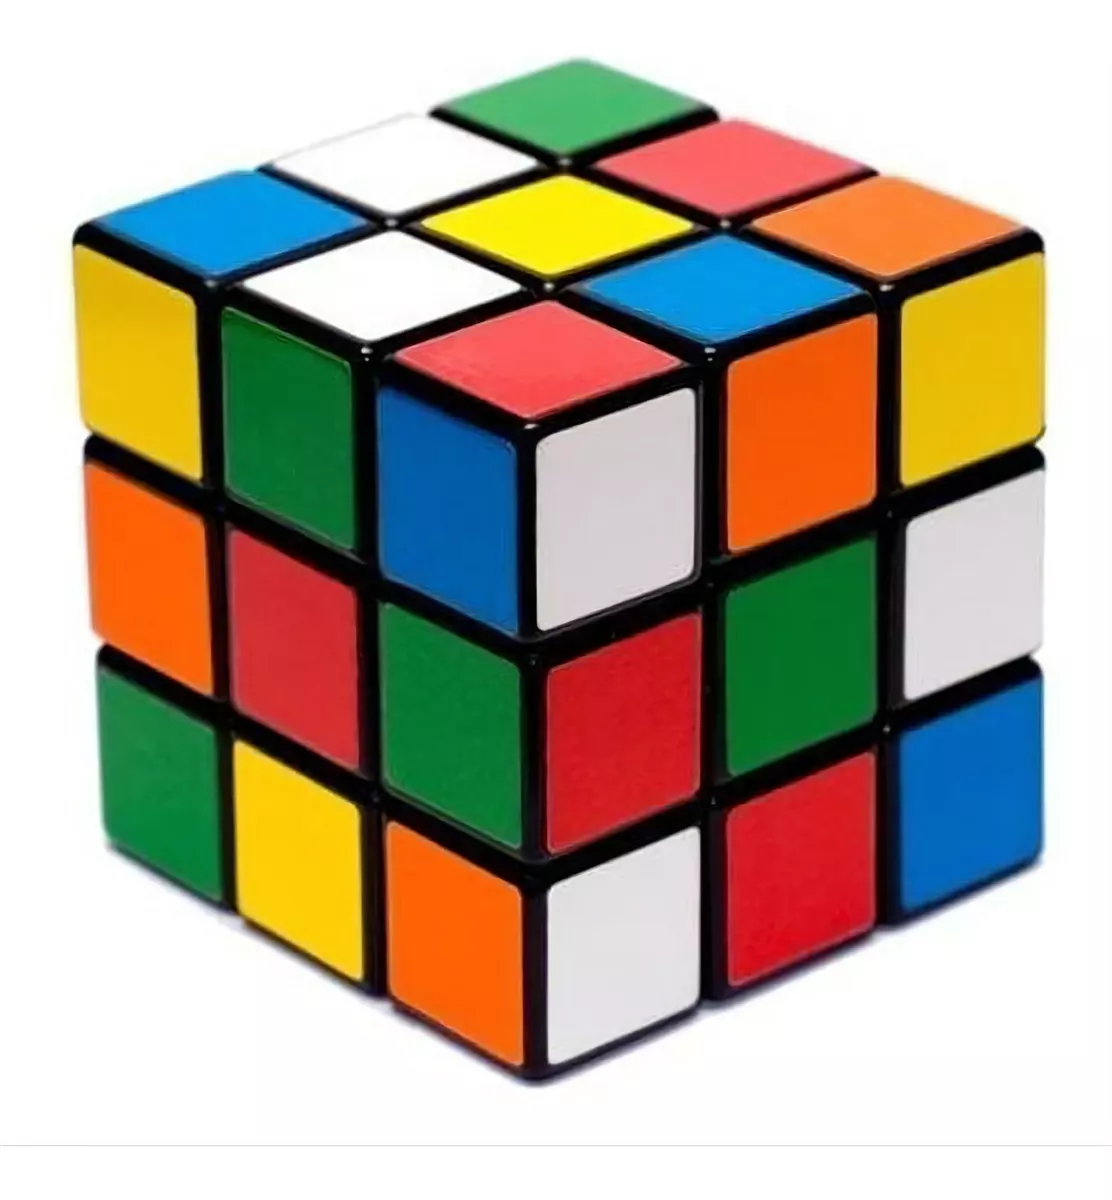 Terceira imagem para pesquisa de cubo magico 3x3x3